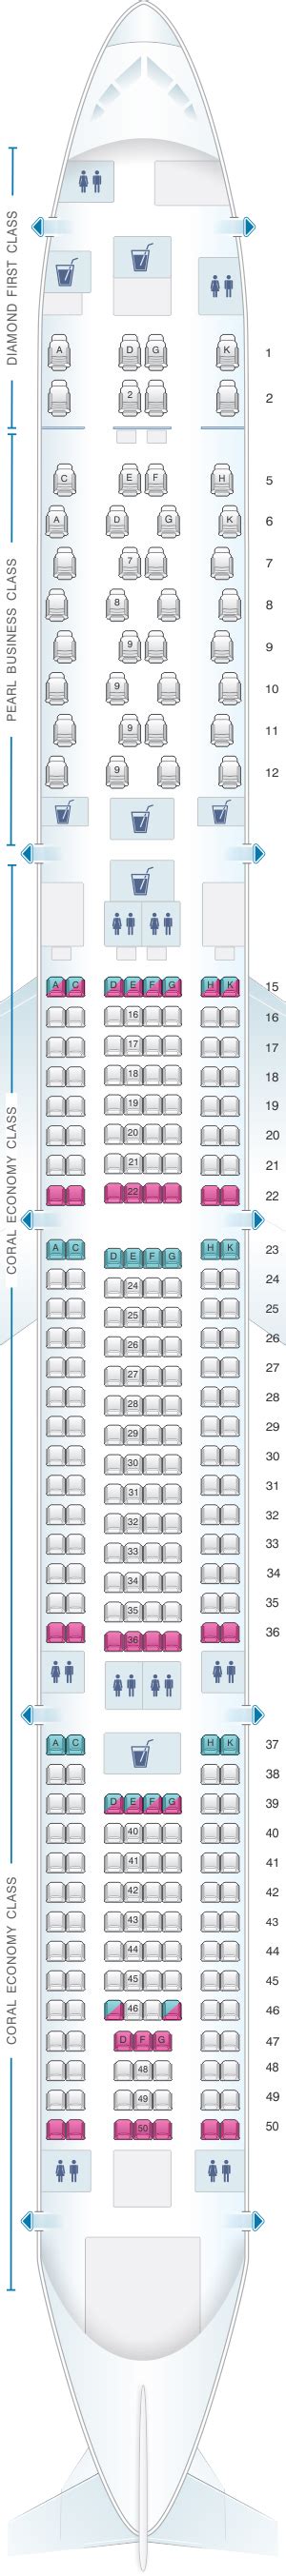 Seat Map Etihad Airways Airbus A340 600 Seatmaestro